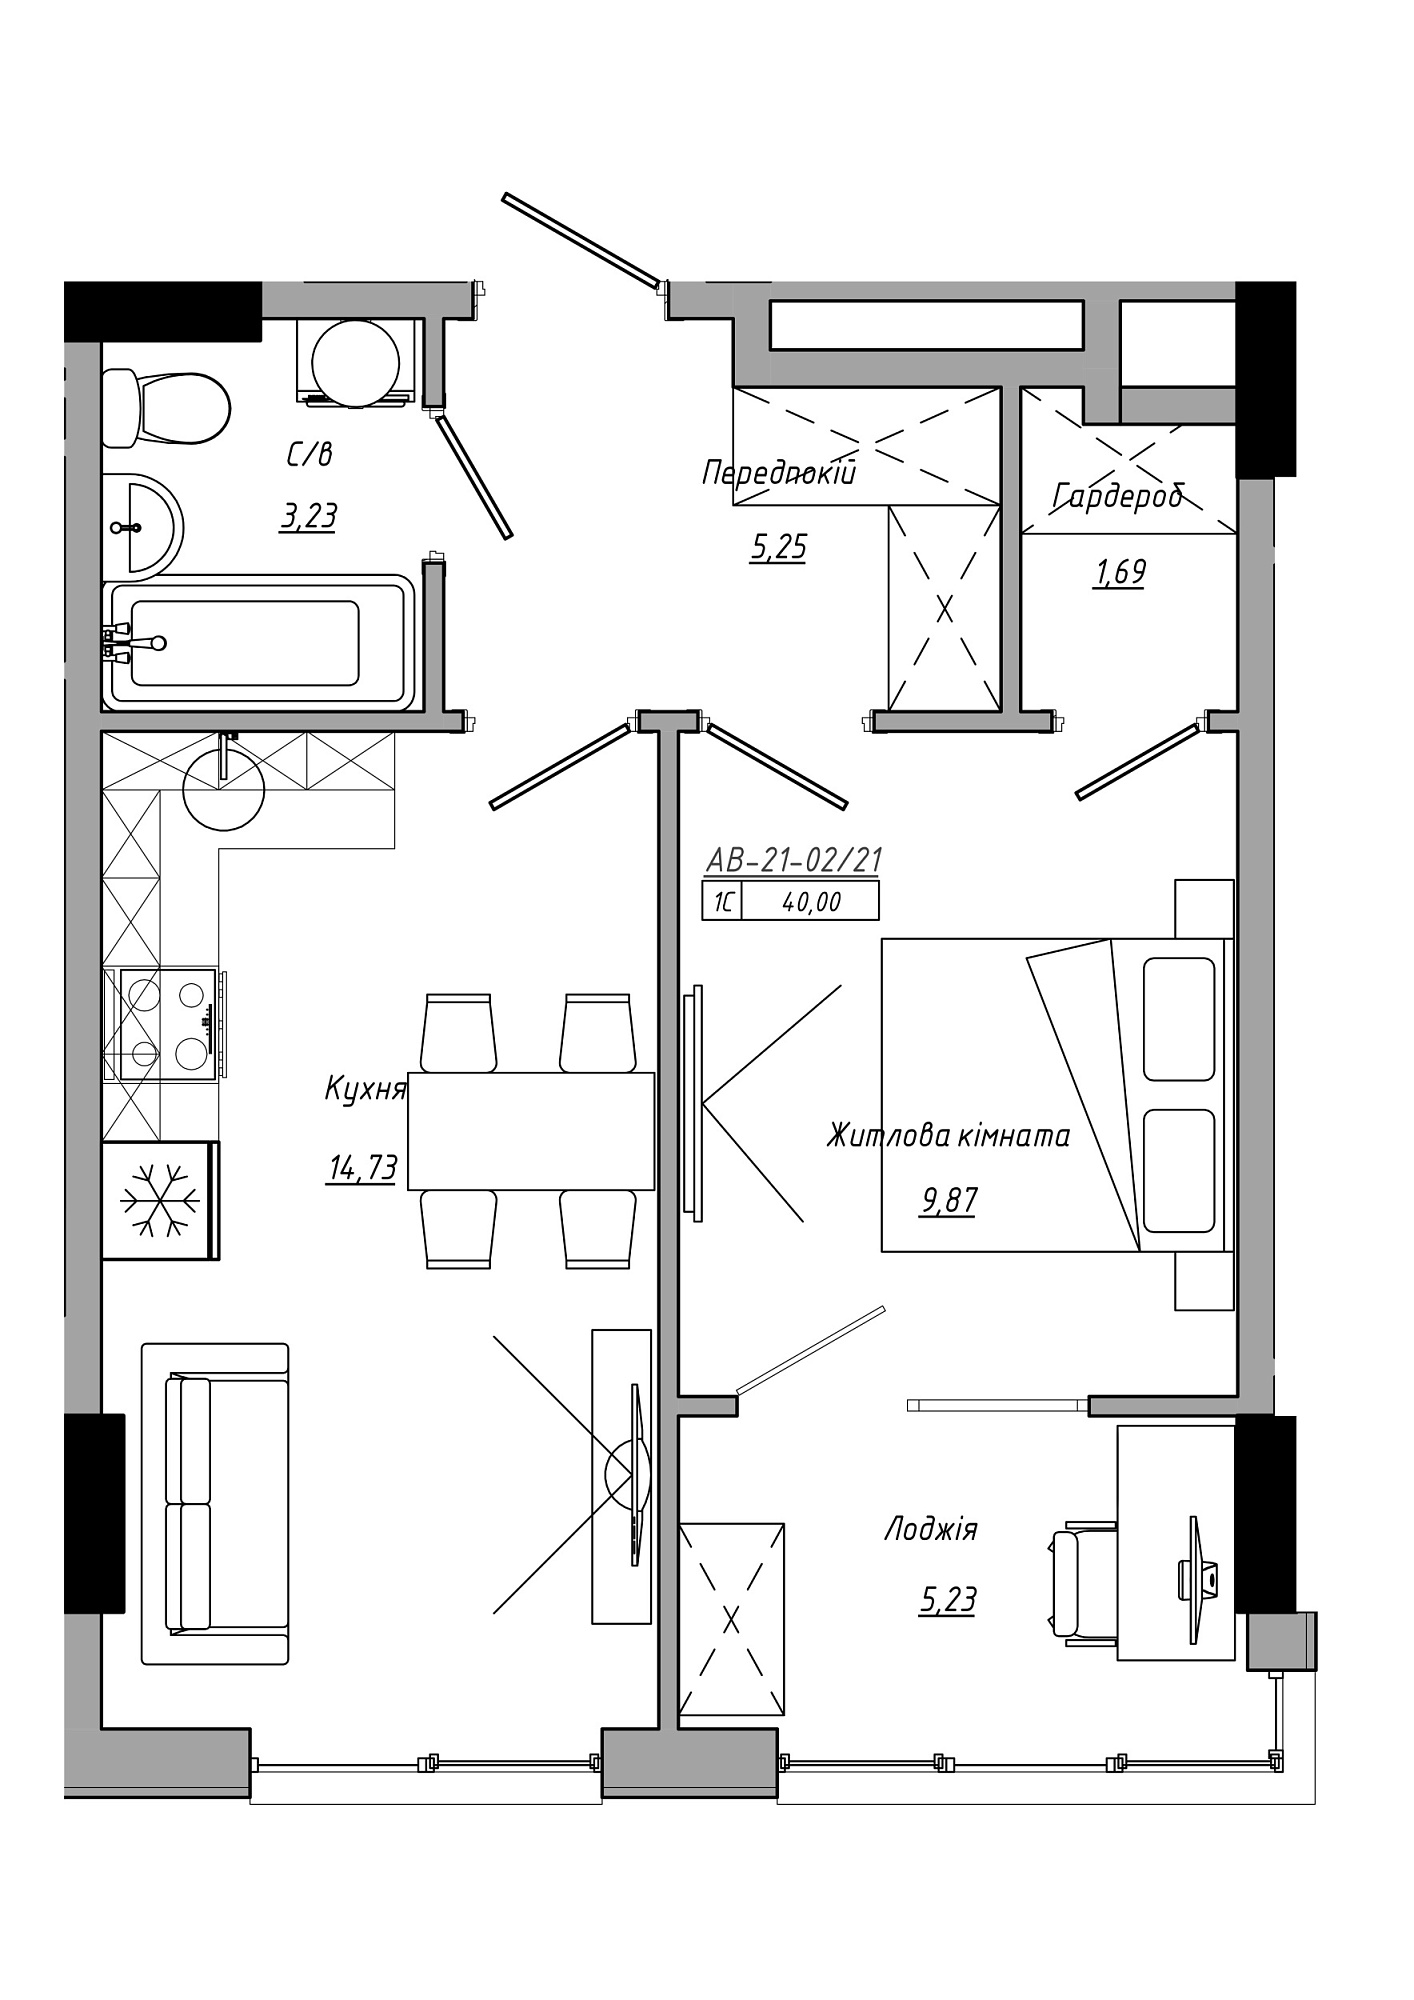 Планування 1-к квартира площею 40м2, AB-21-02/00021.